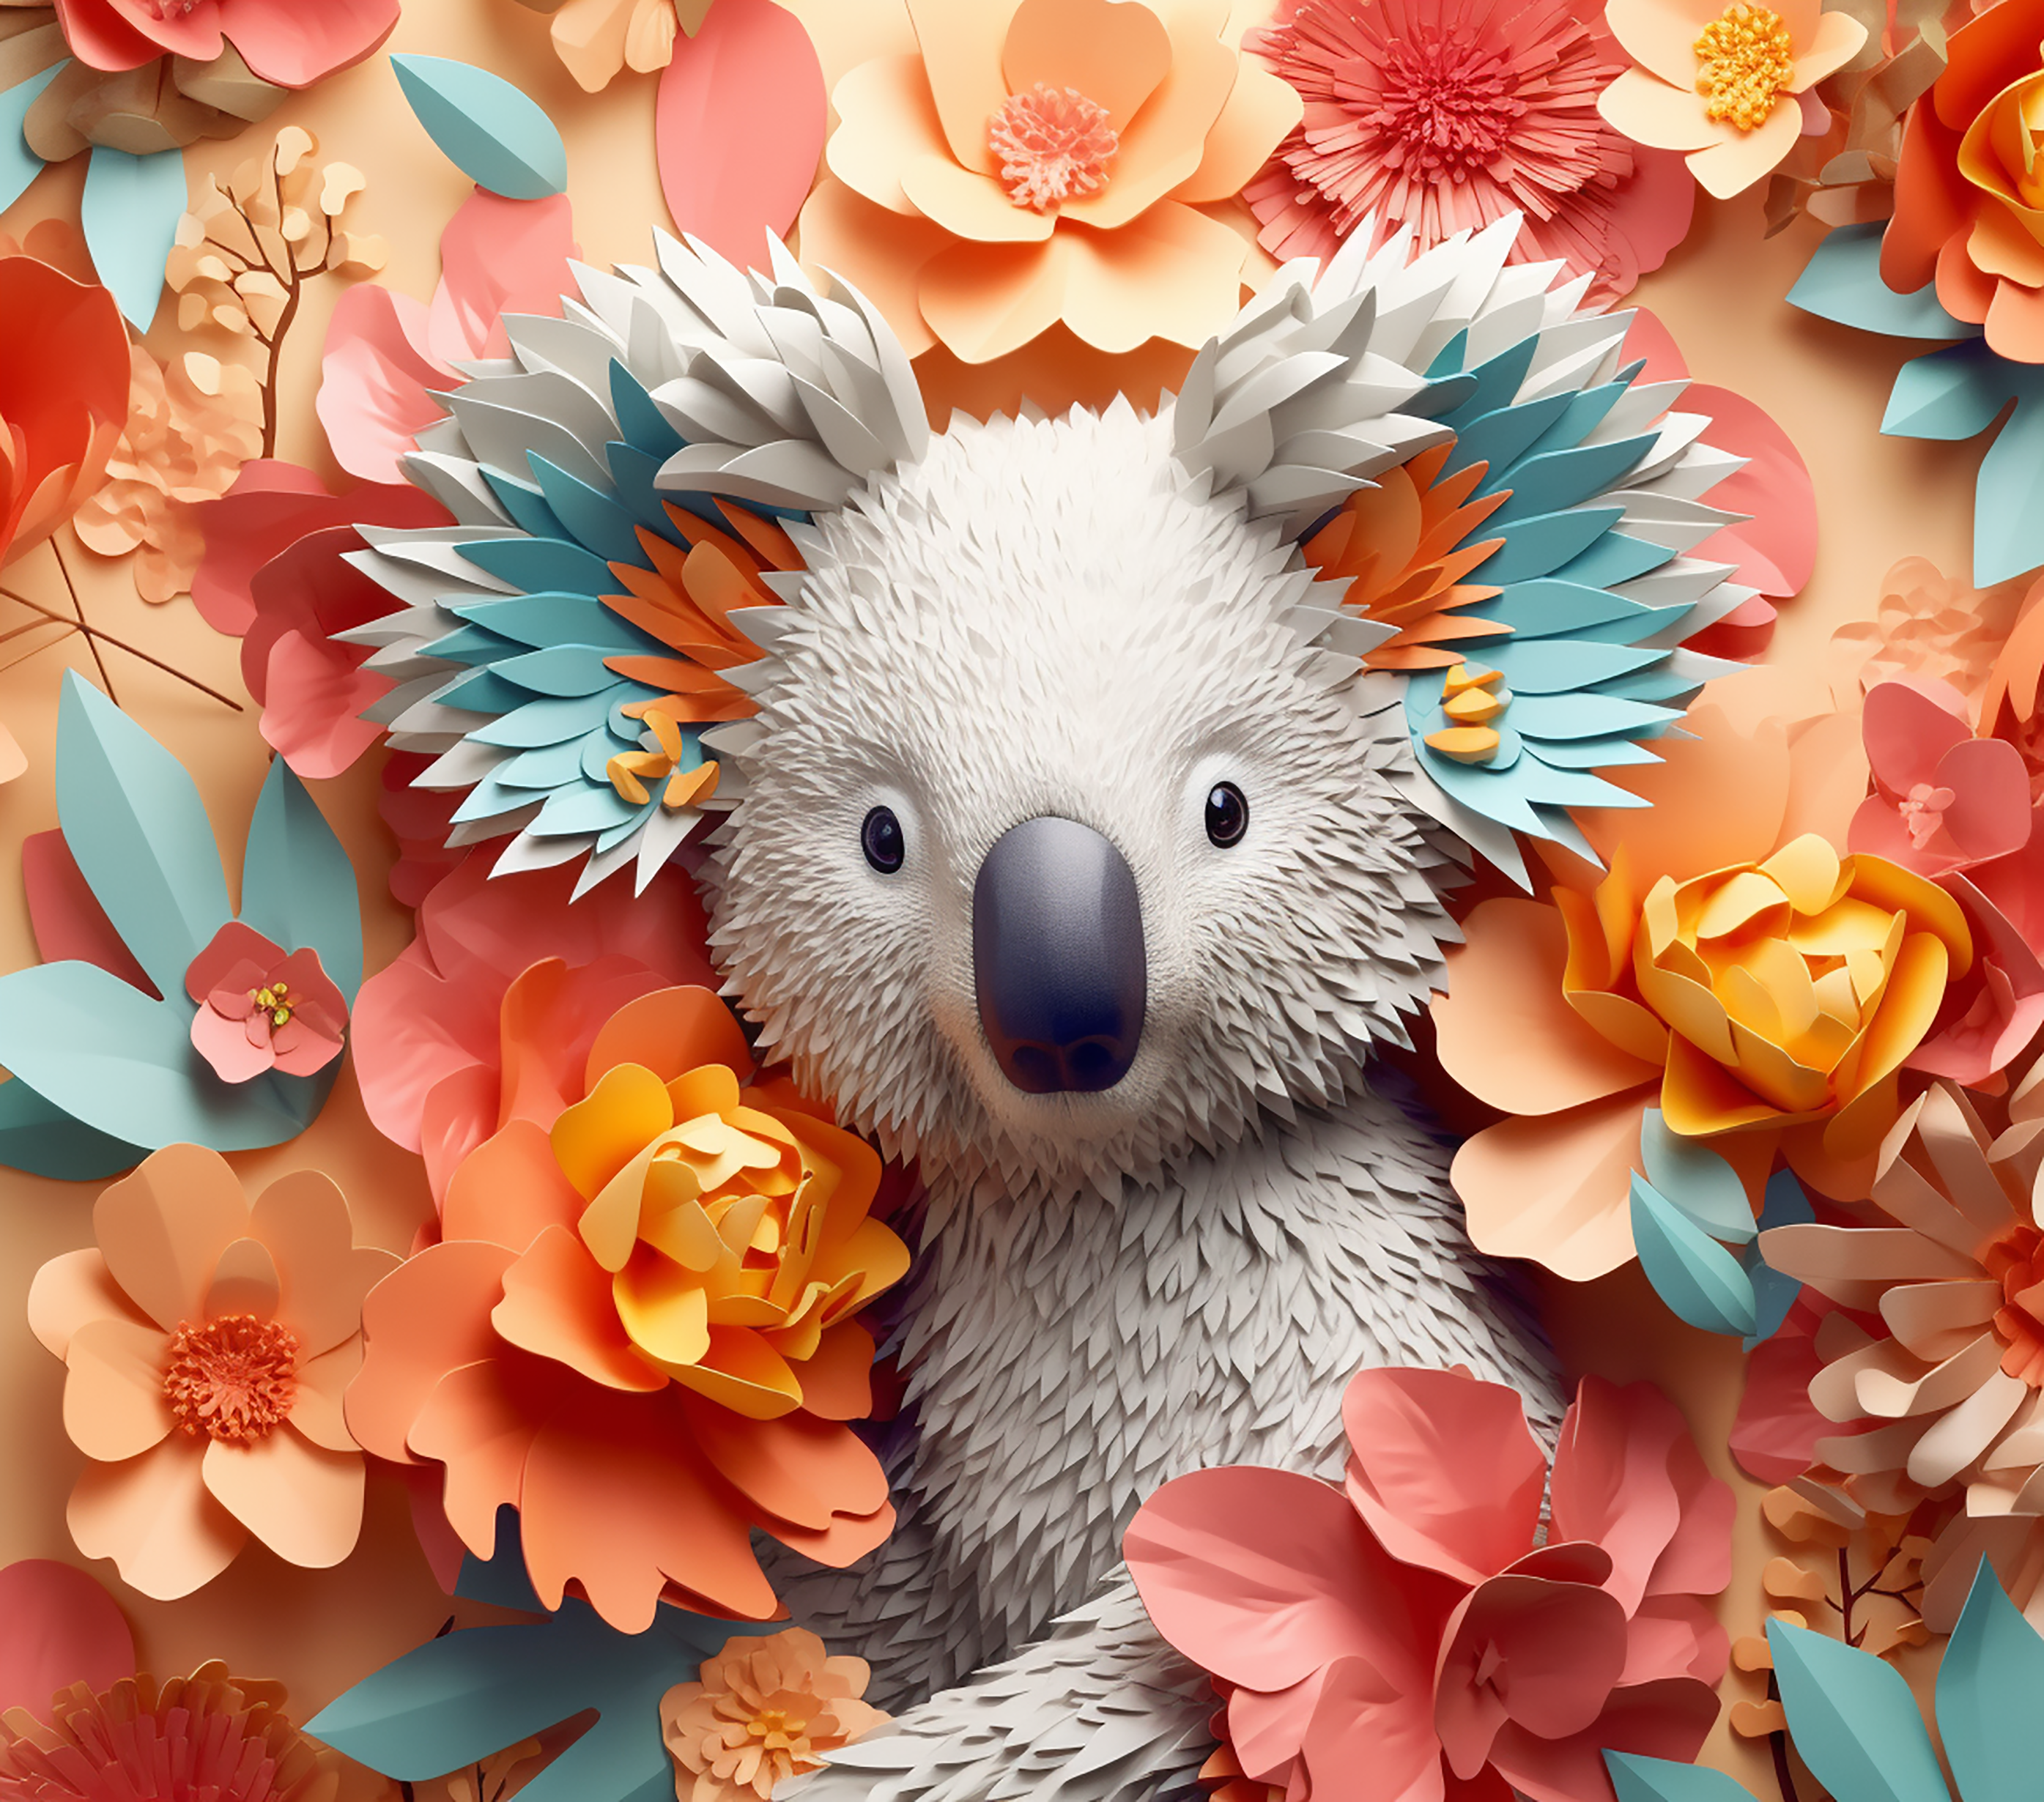 3D Colorful Koala Flowers – LMNOP design boutique